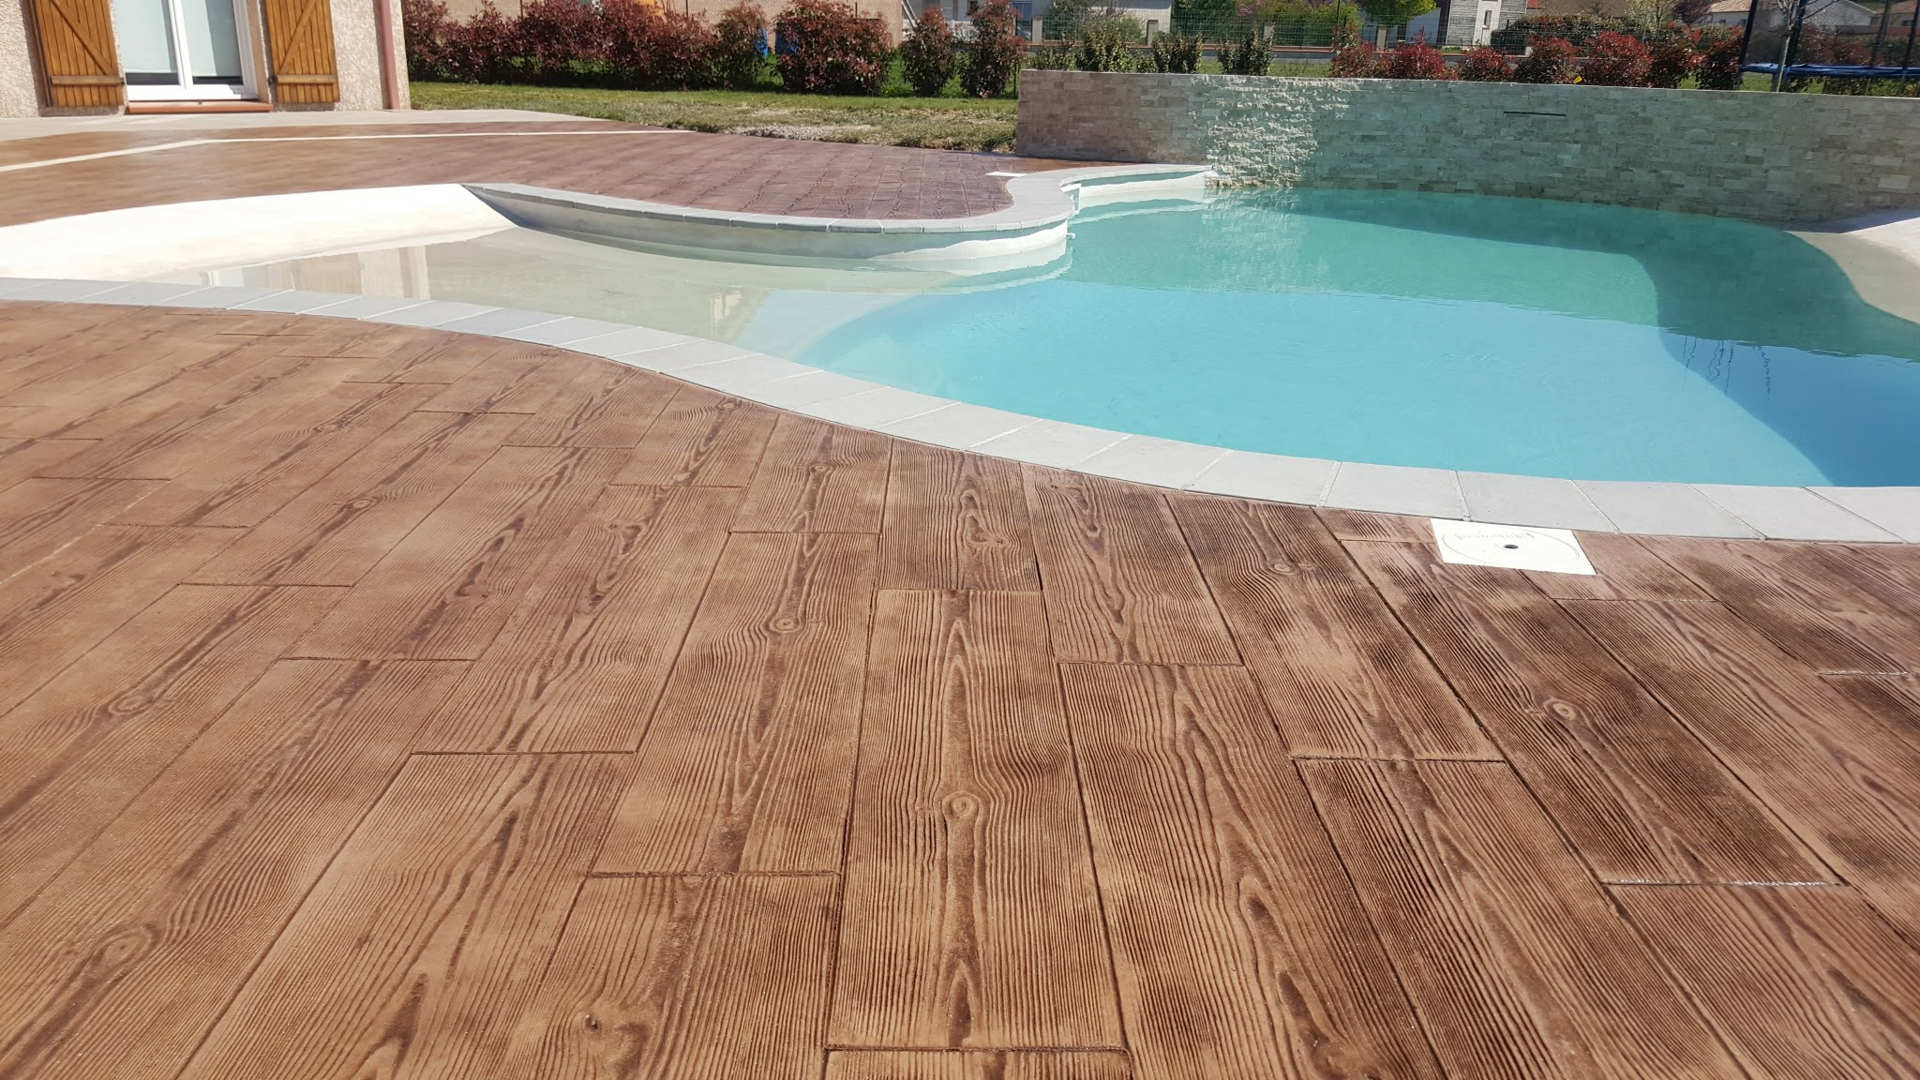 pavimento de concreto impresso de madeira ao redor da piscina